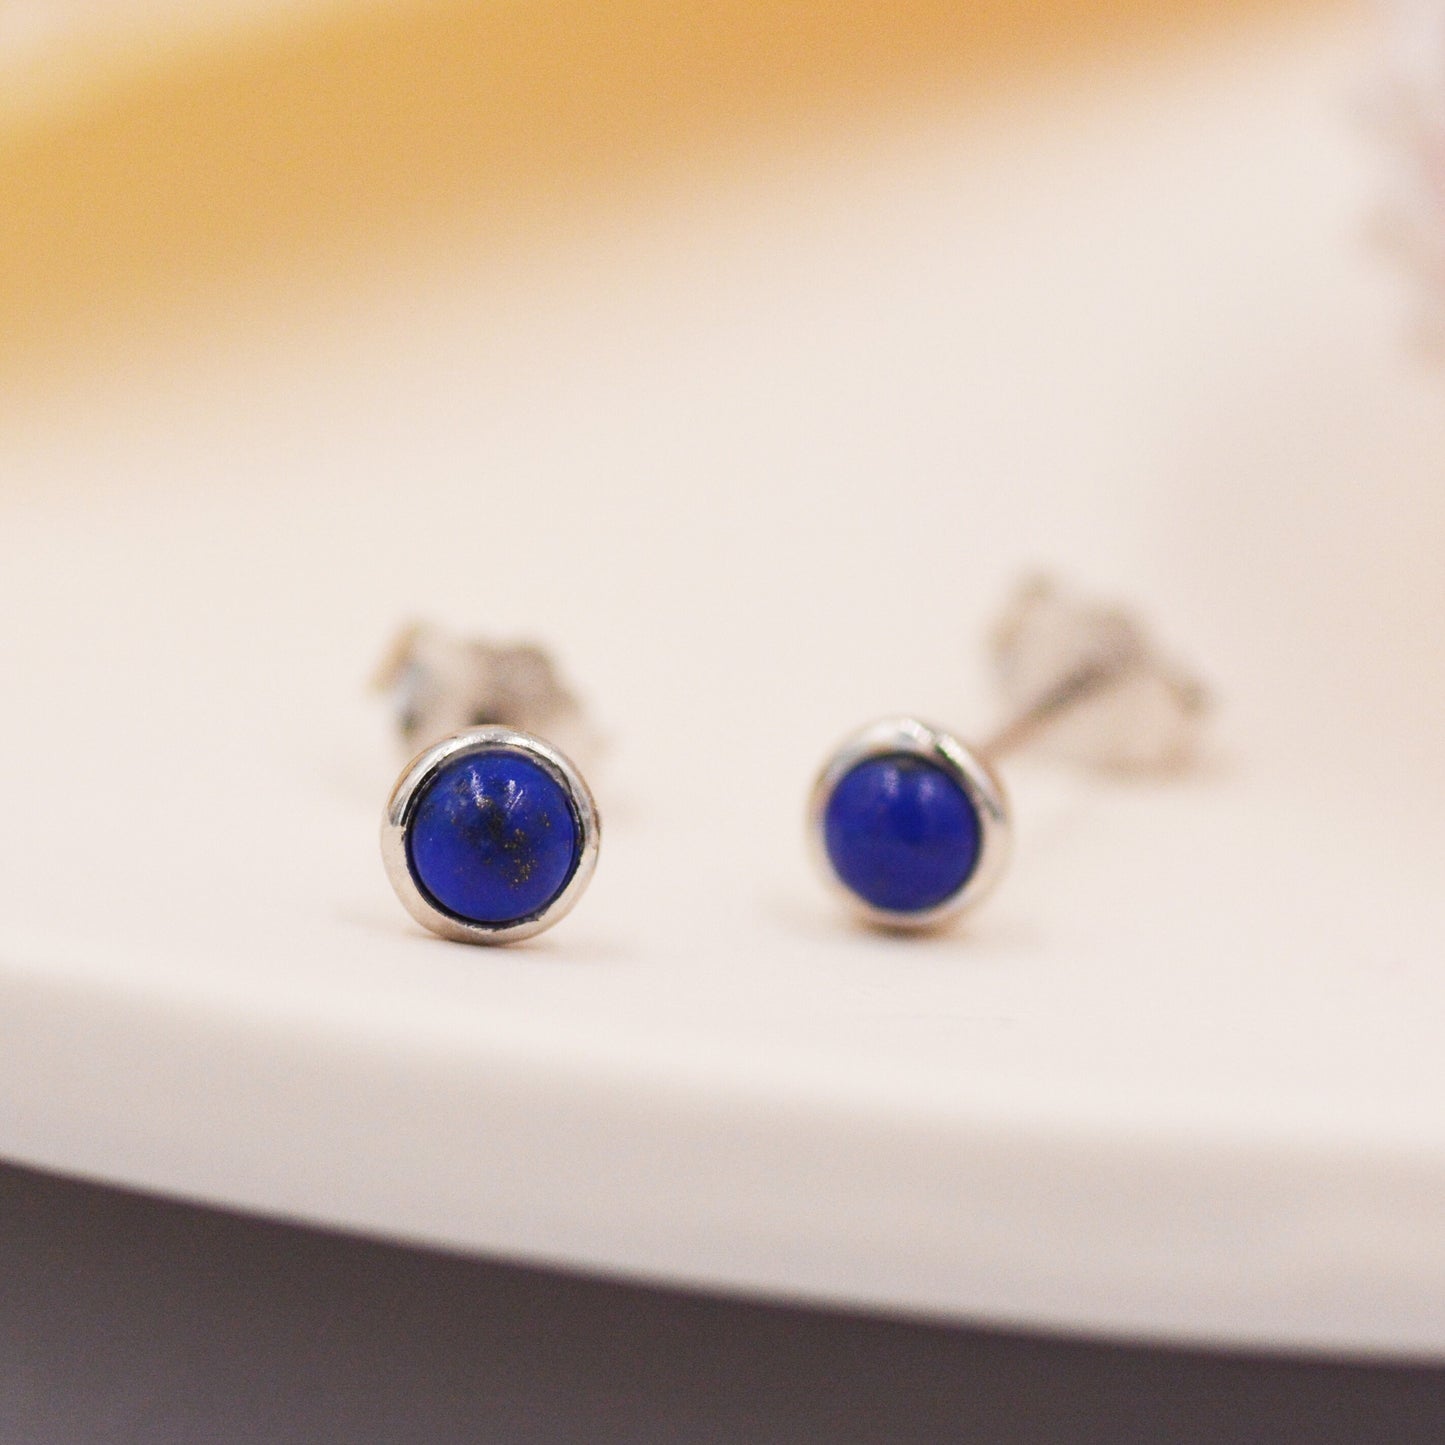 Natural Lapis Lazuli Stud Earrings in Sterling Silver - Genuine Blue Lapis Lazuli Crystal Stud Earrings  - Semi Precious Gemstone